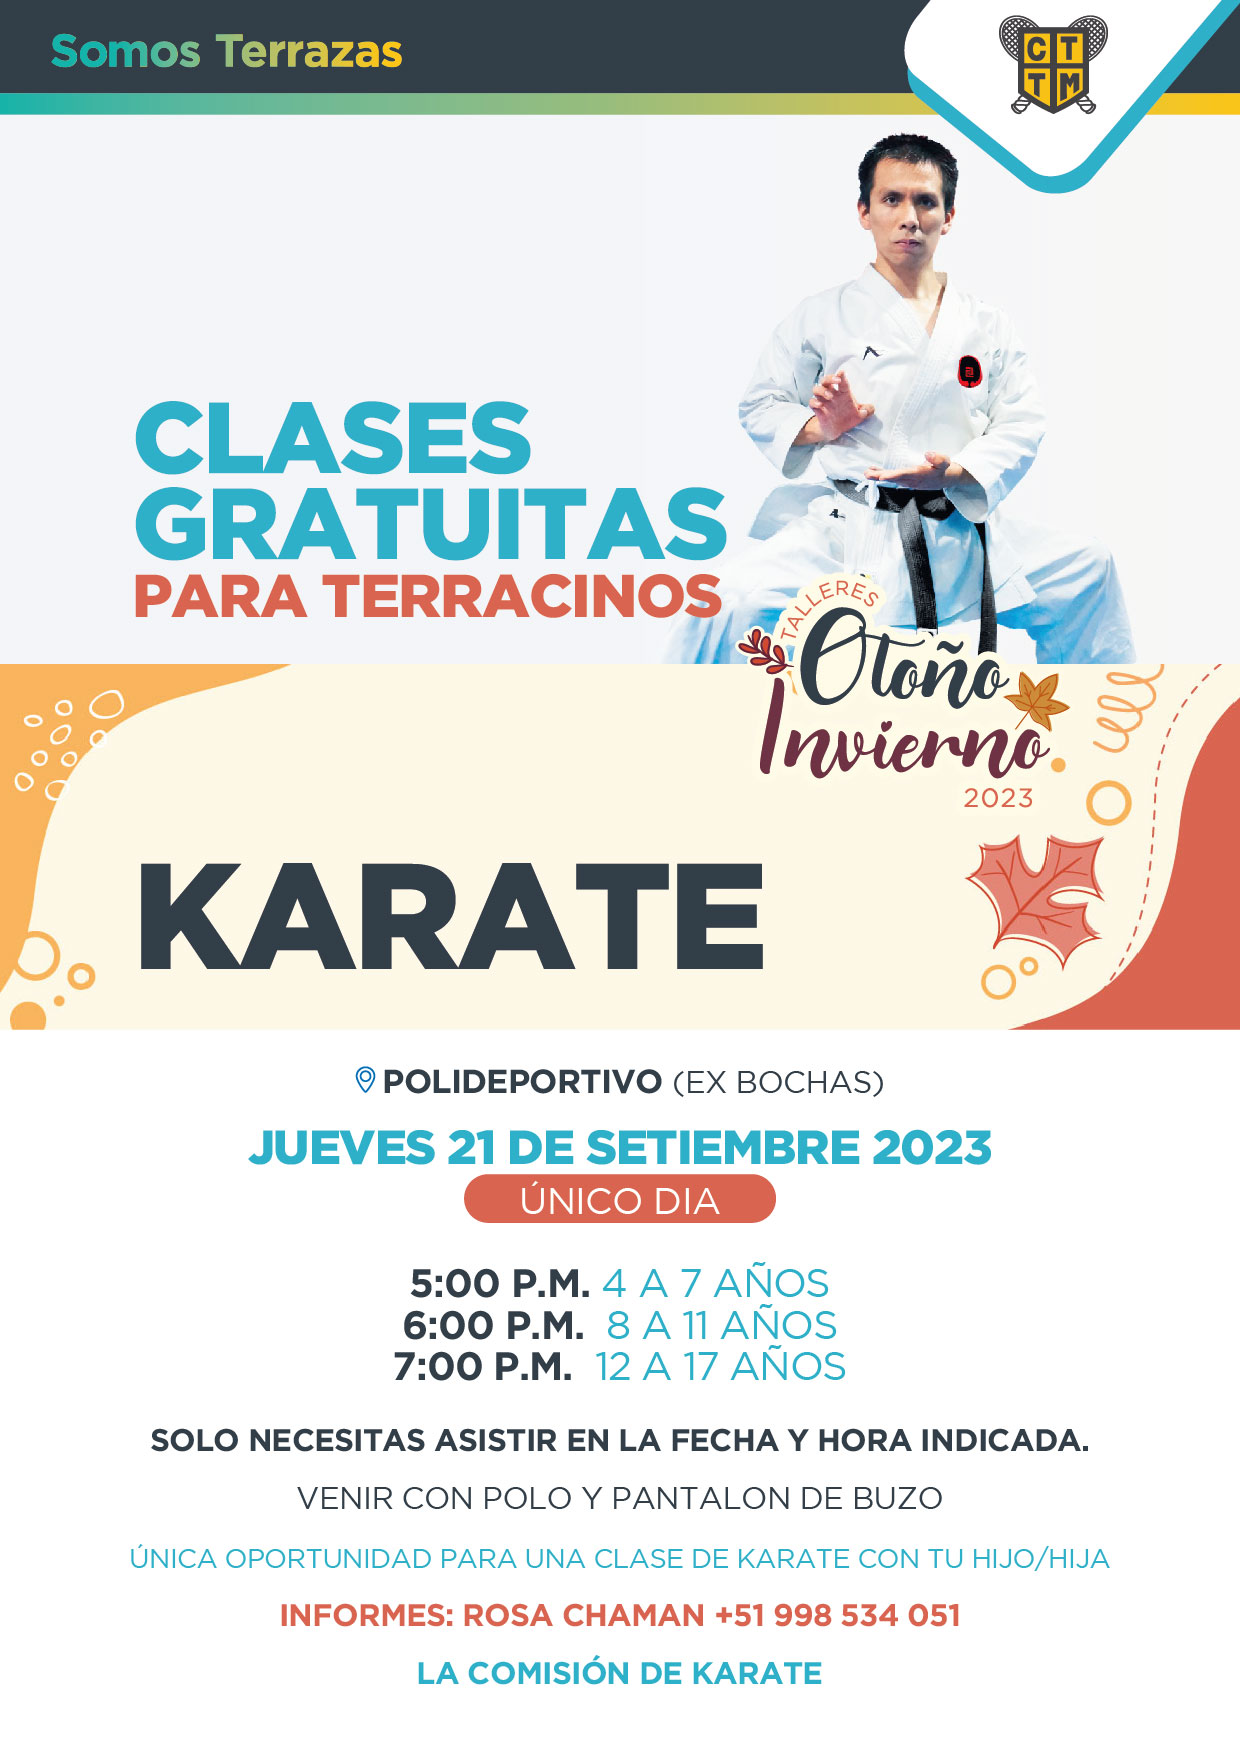 CLASES GRATUITAS DE KARATE PARA TERRACINOS